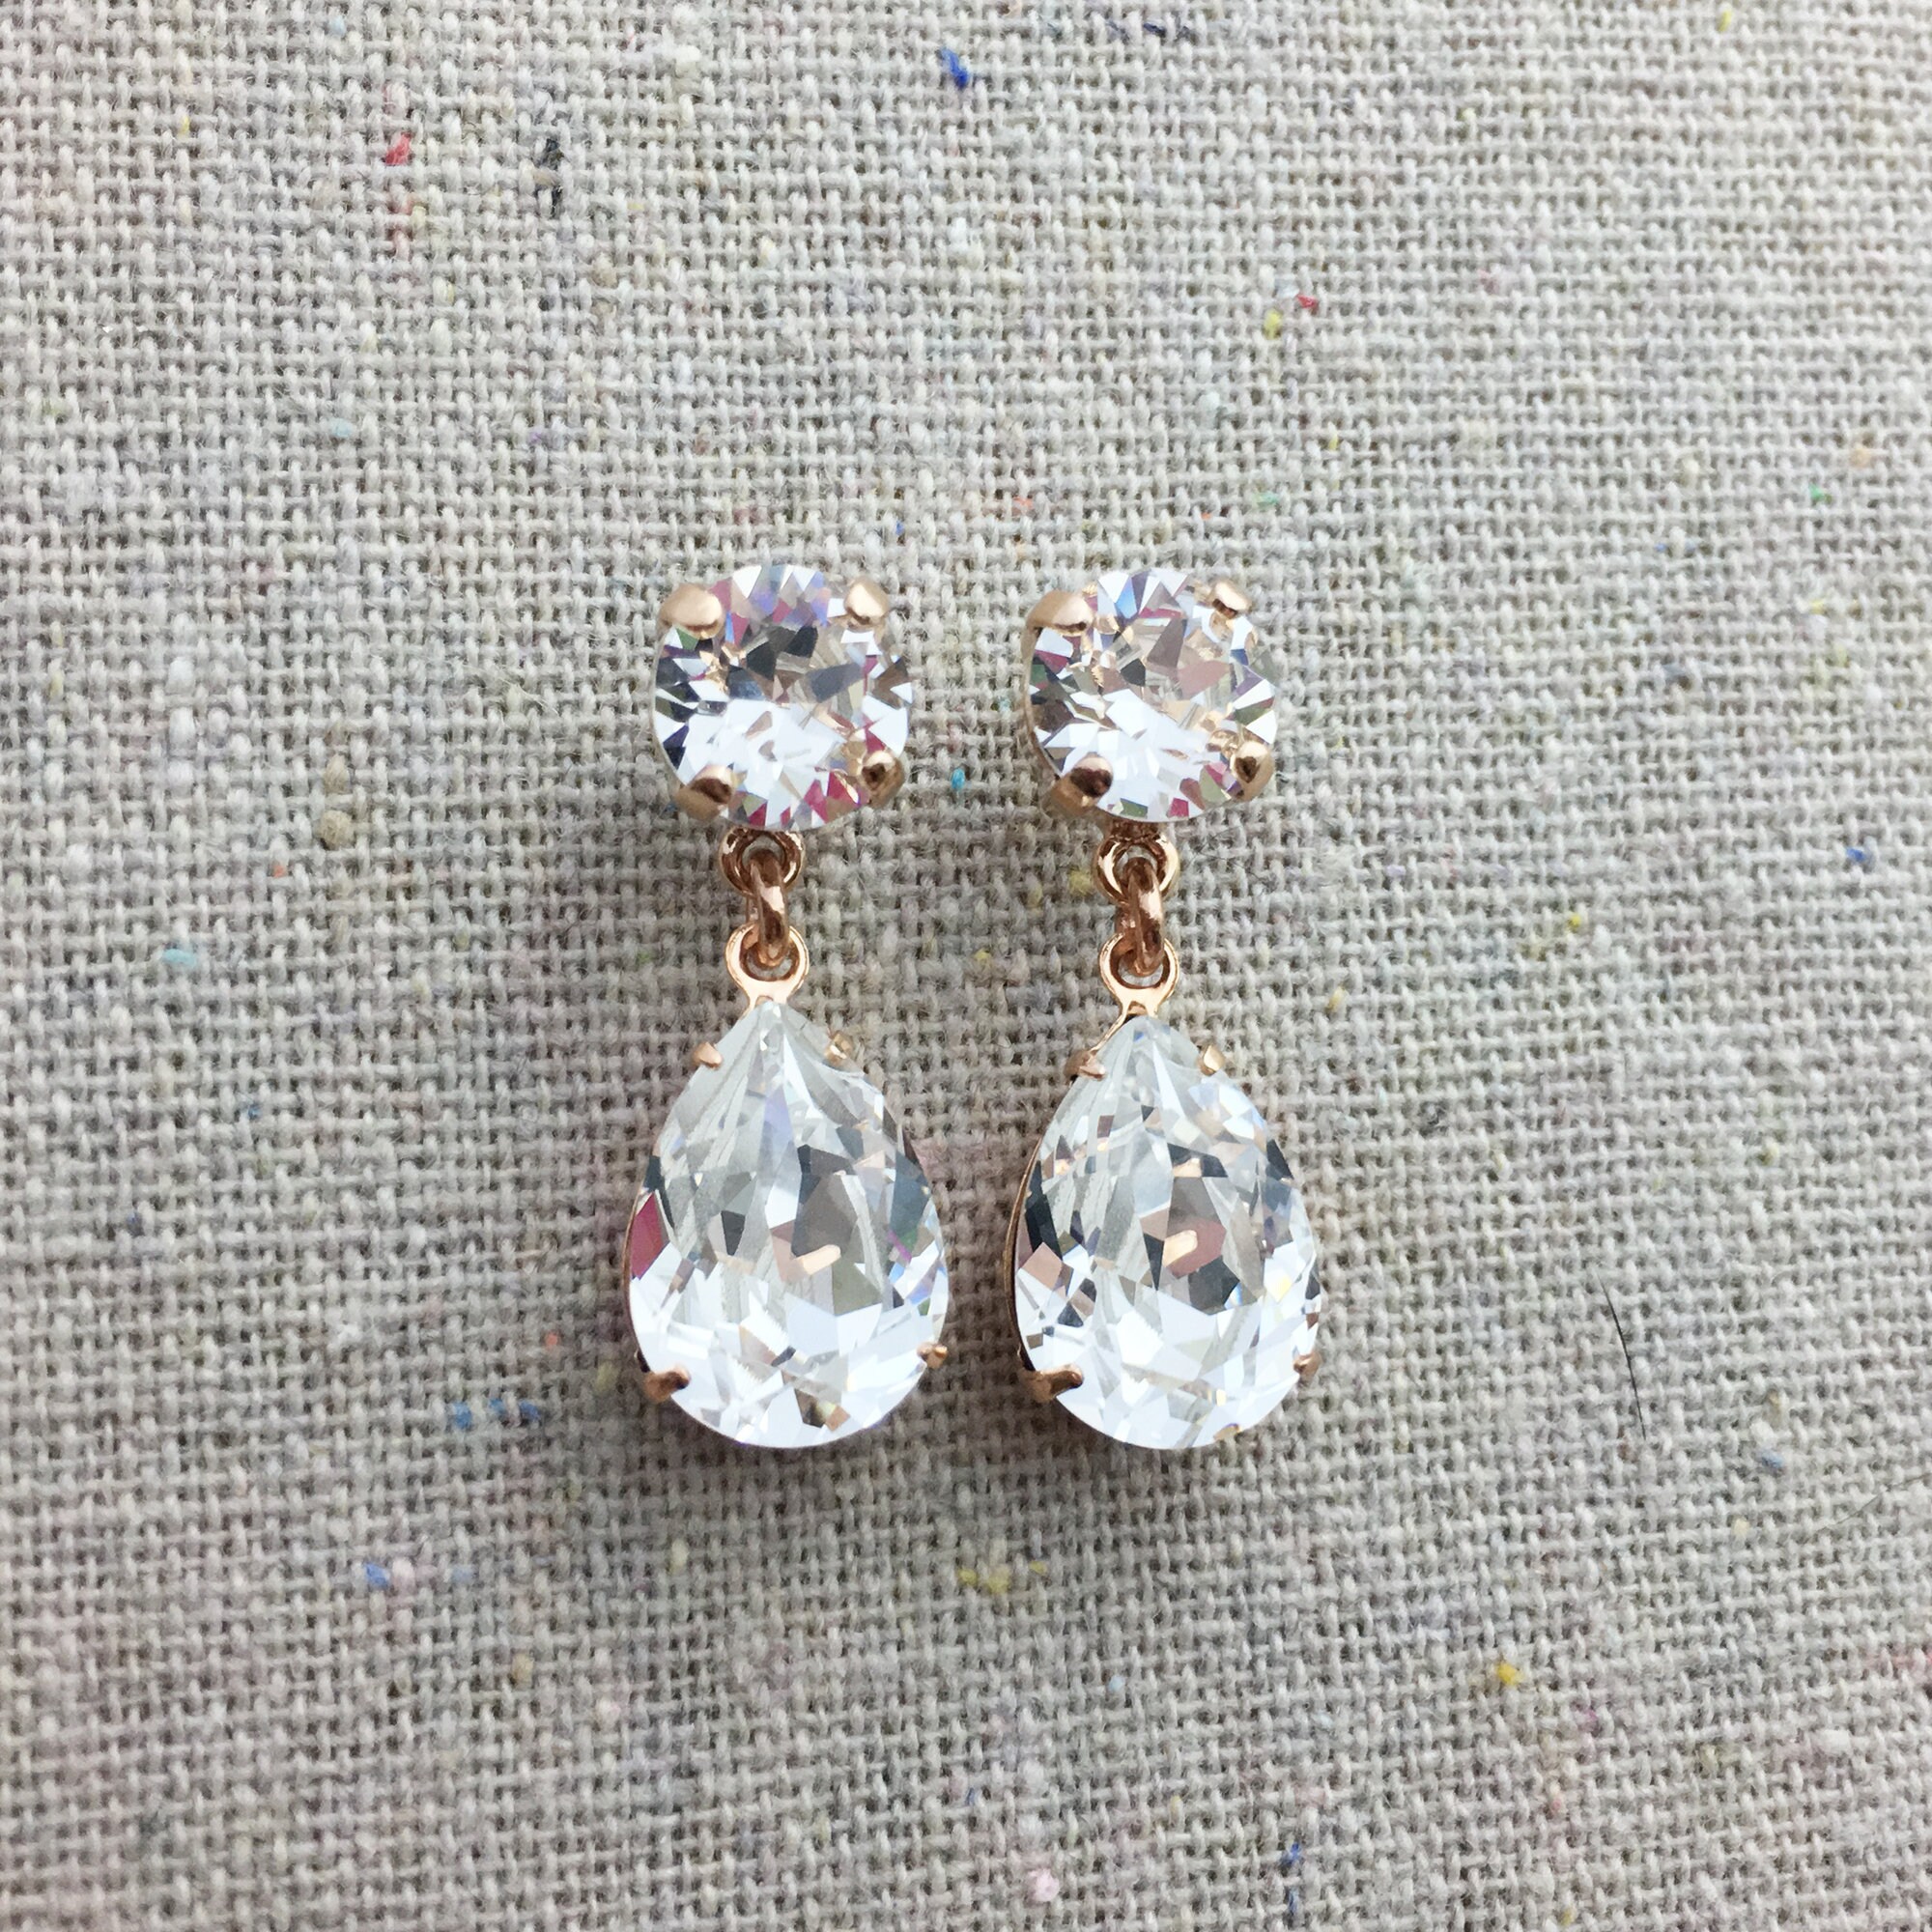 Swarovski Crystal Earrings Dangling Post Bridal Earrings | Etsy